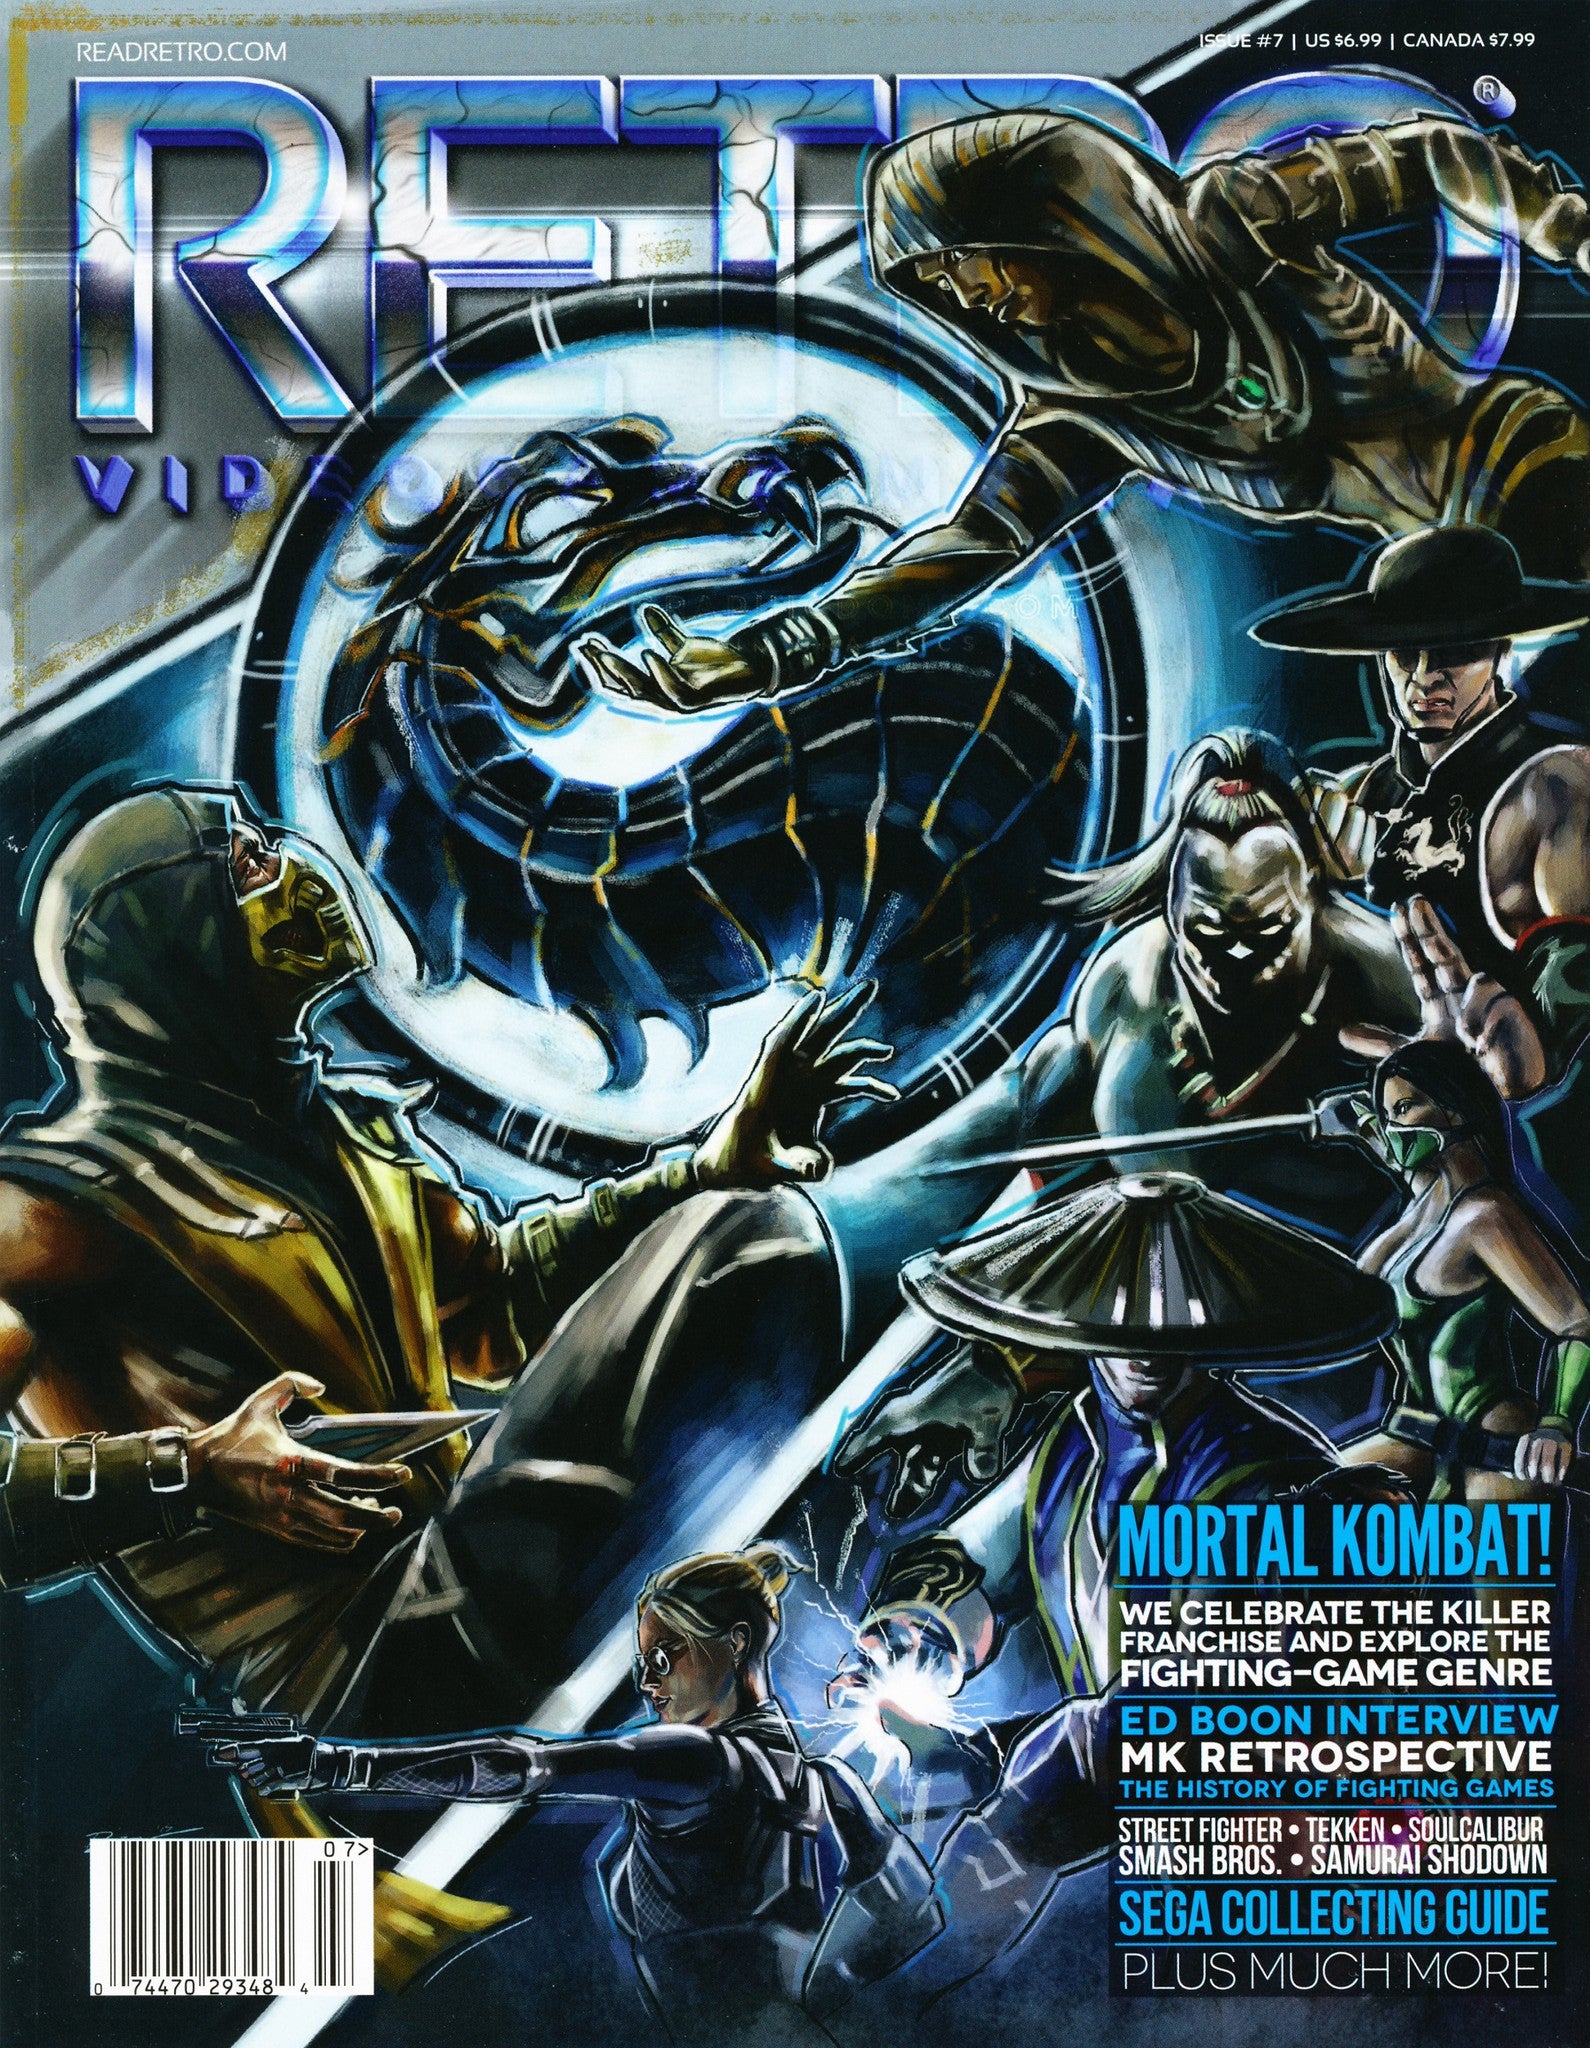 RETRO Video Game Magazine Issue 7